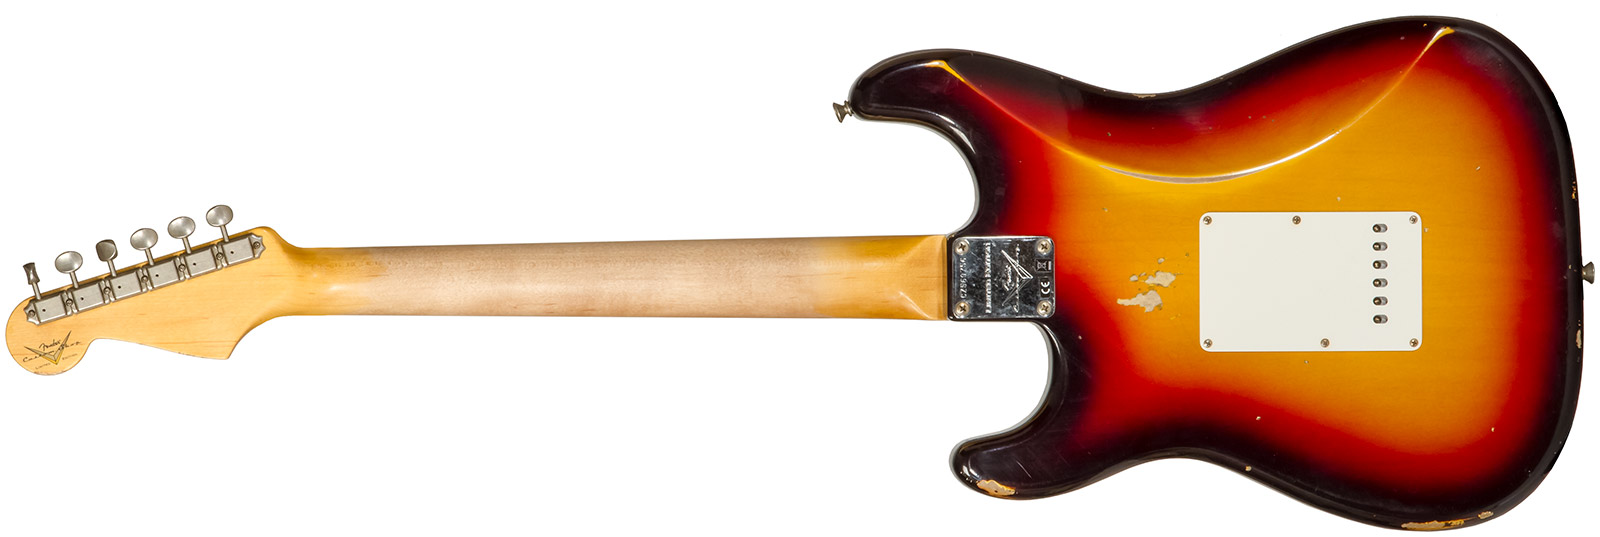 Fender Custom Shop Strat Late 1964 3s Trem Rw #cz569756 - Relic Target 3-color Sunburst - Str shape electric guitar - Variation 1